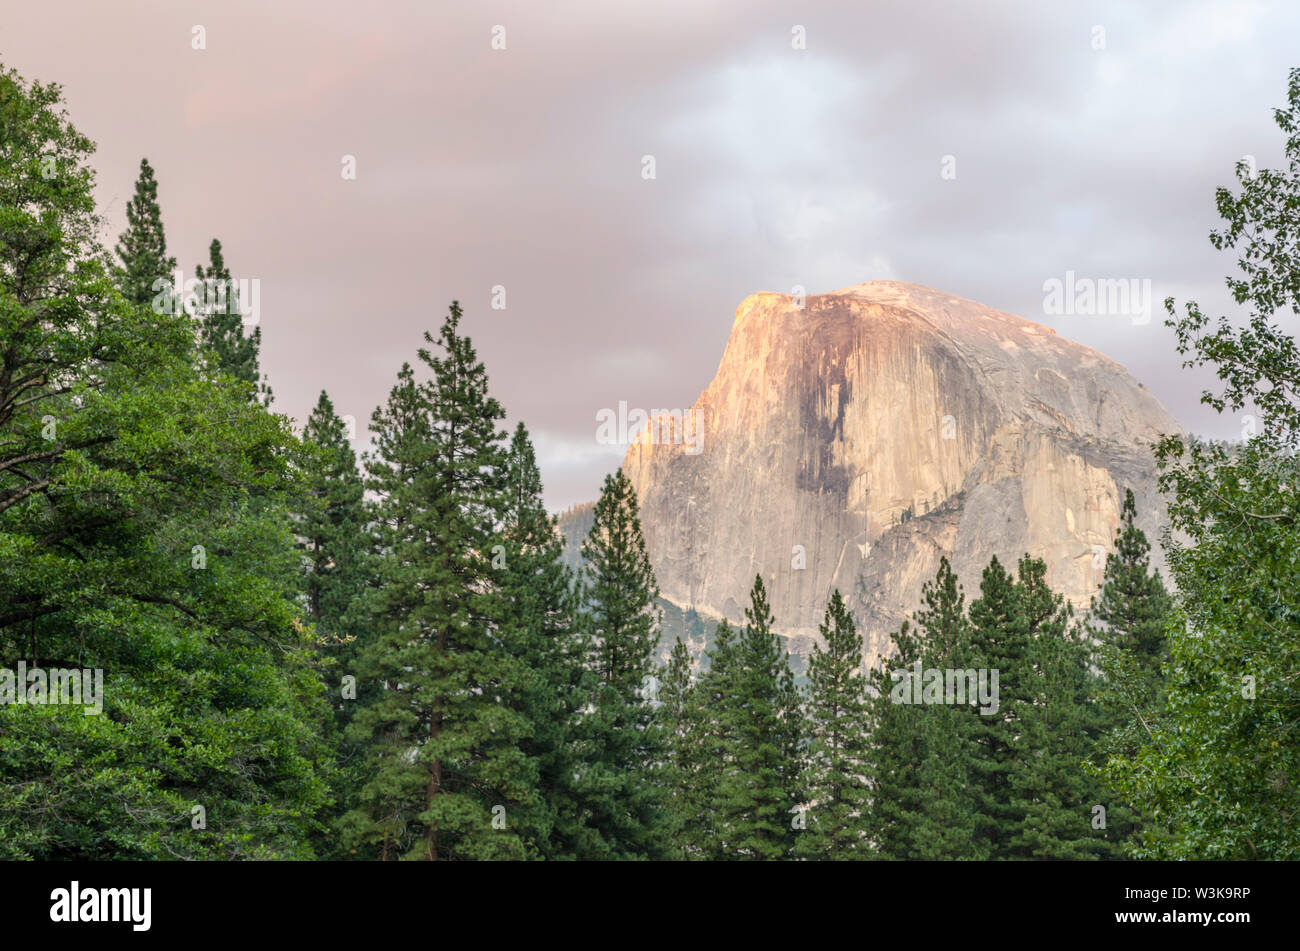 Demi Dôme vu de la vallée Yosemite. Photographié après le coucher du soleil. Yosemite National Park, California, USA. Banque D'Images